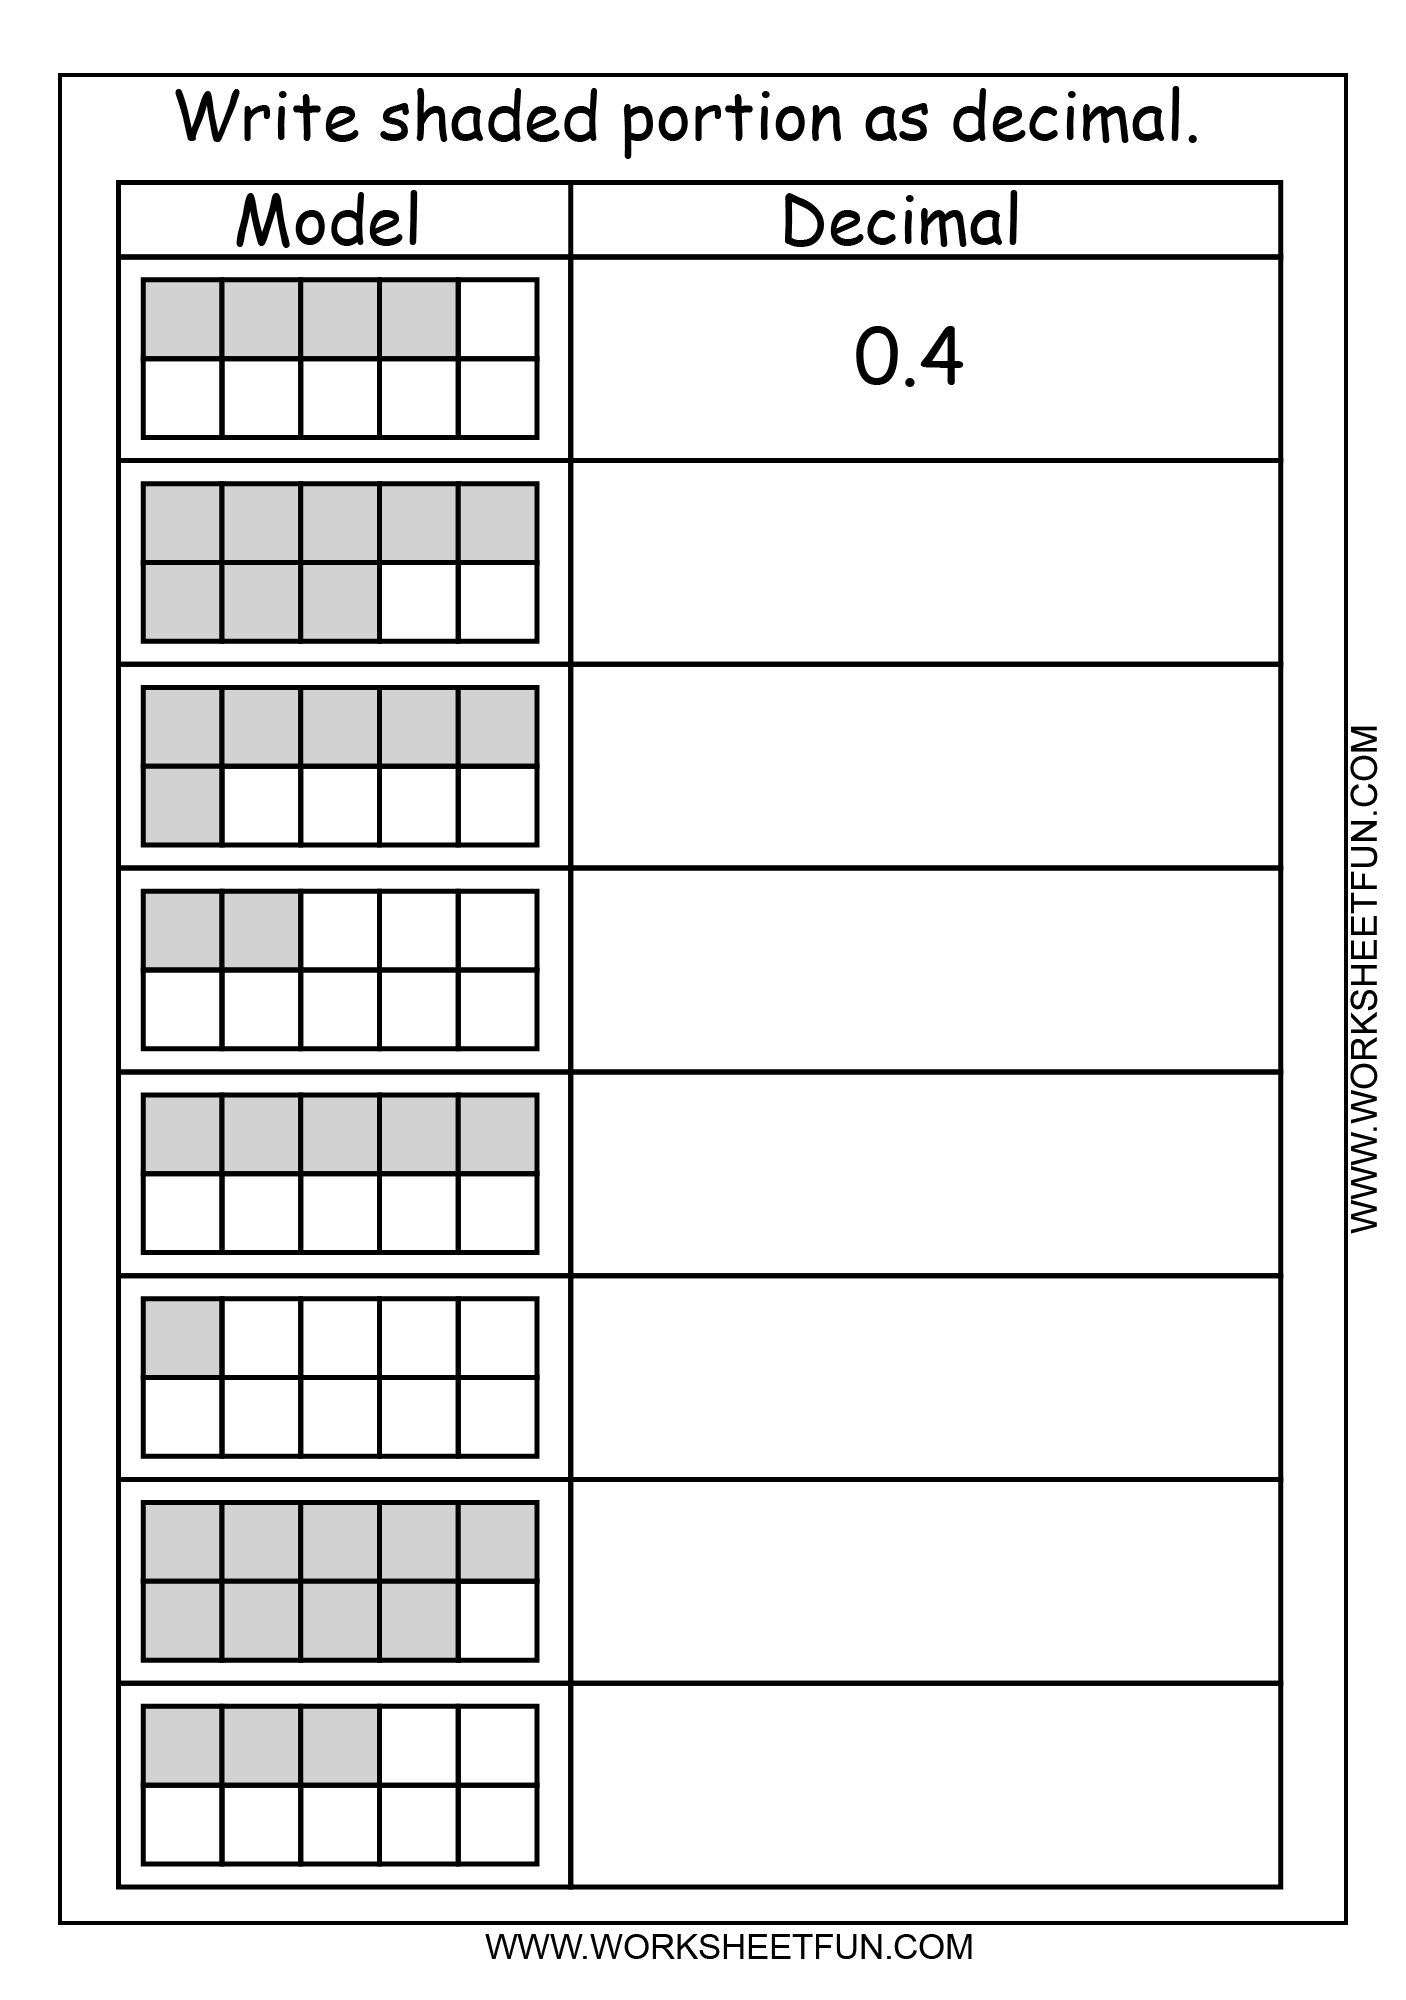 decimal-model-tenths-2-worksheets-free-printable-worksheets